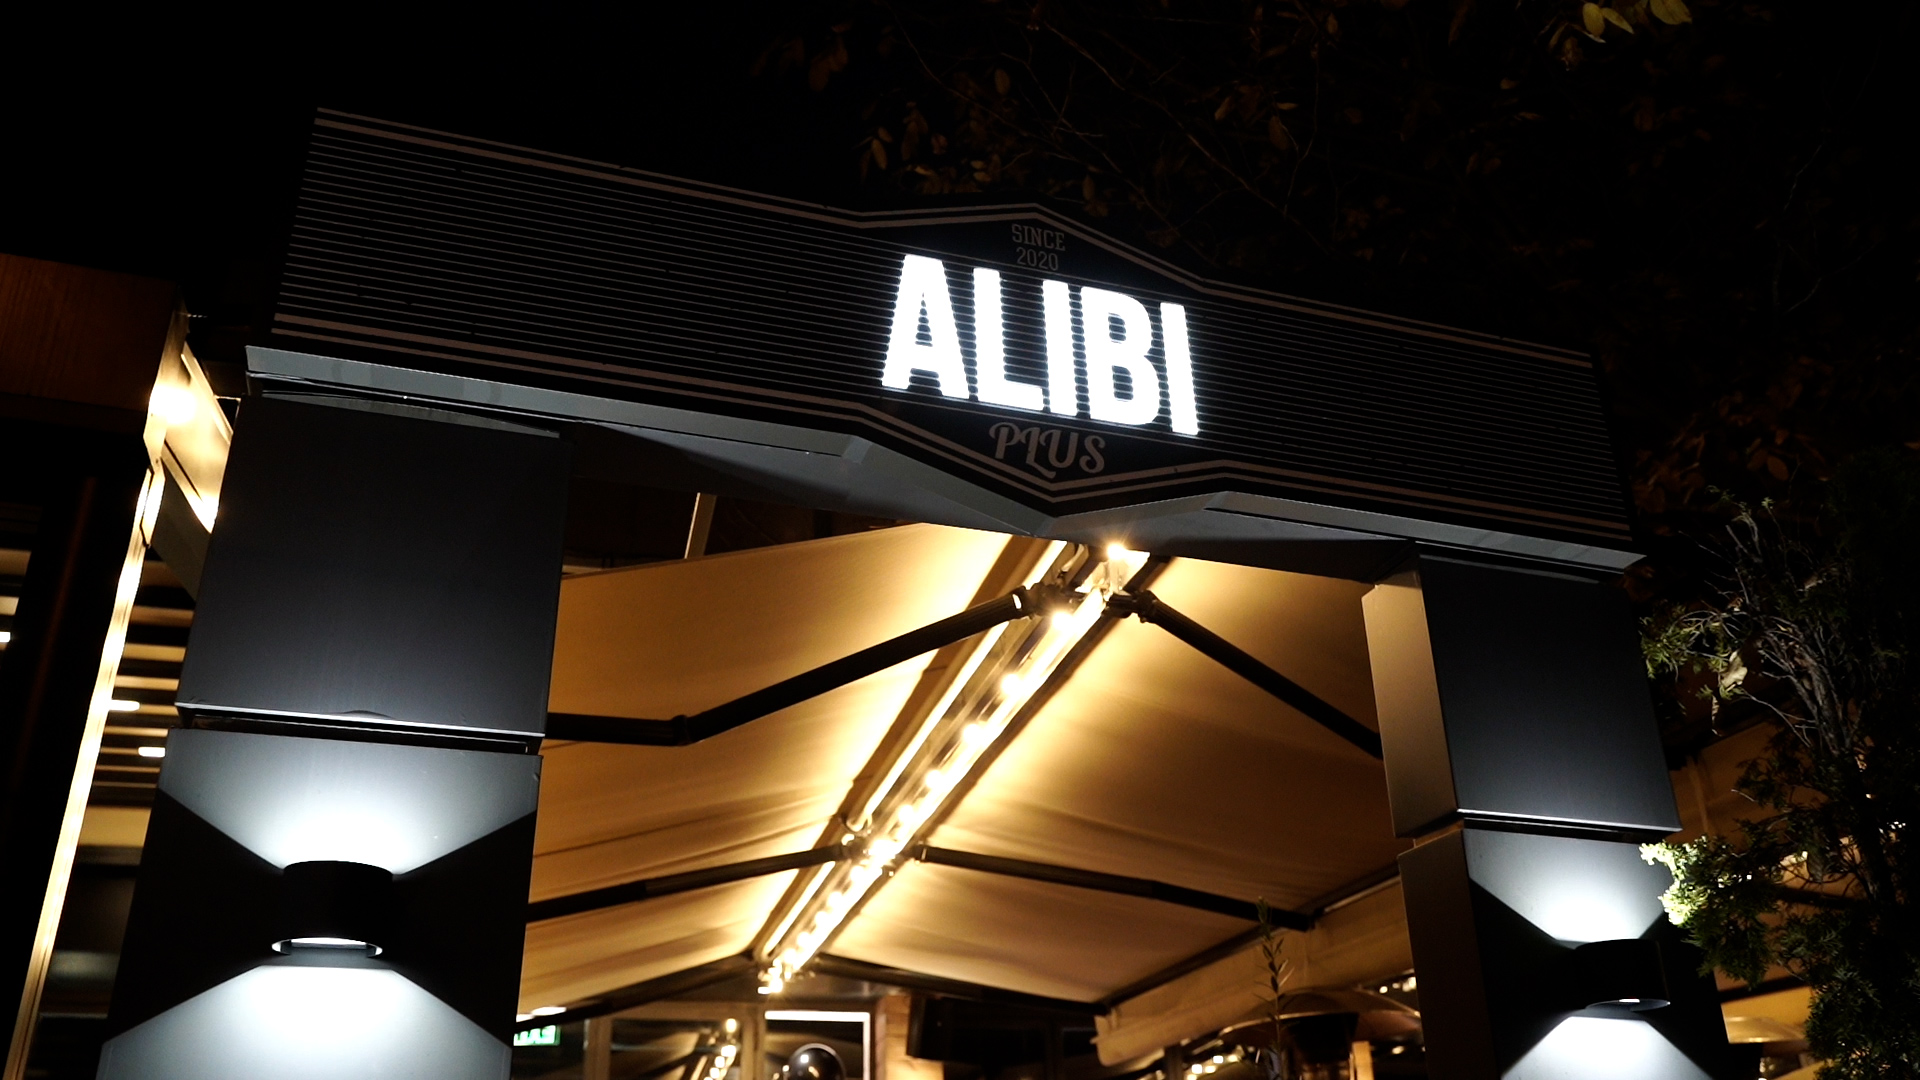 Заведение Alibi Plus